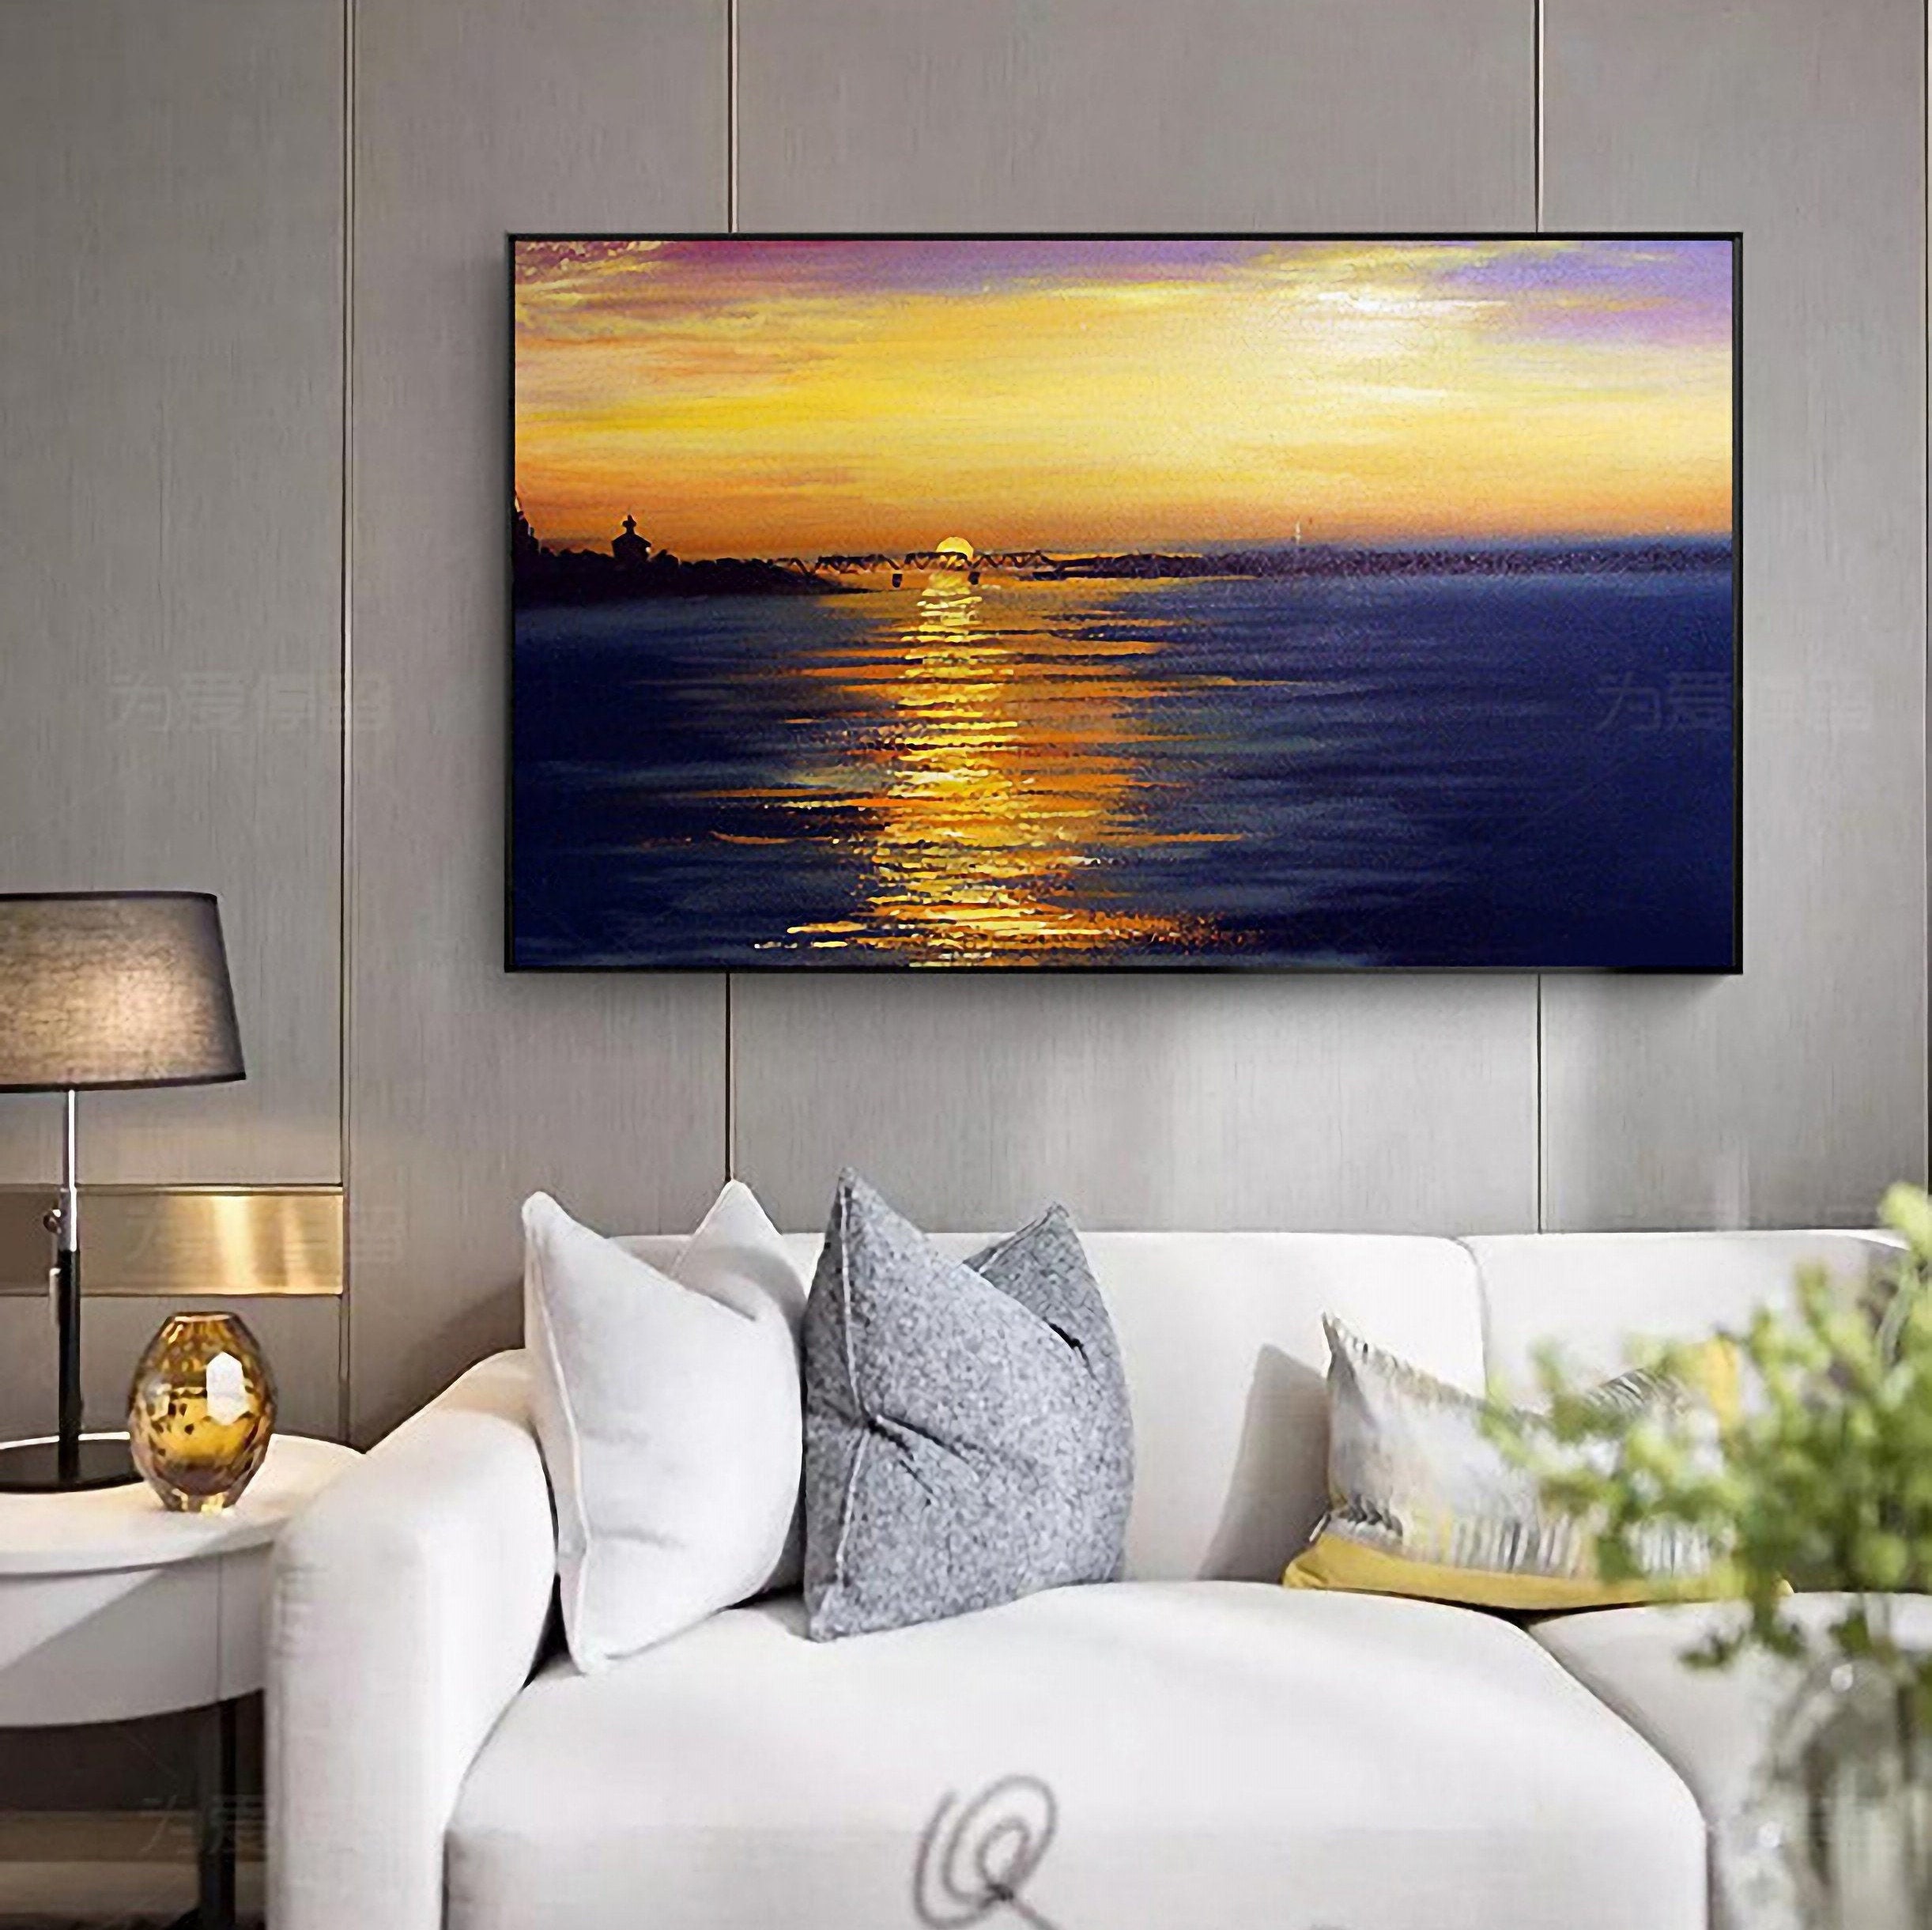 Sunset/sunrise Landscape Oil Painting on Canvas Acrylic | Etsy